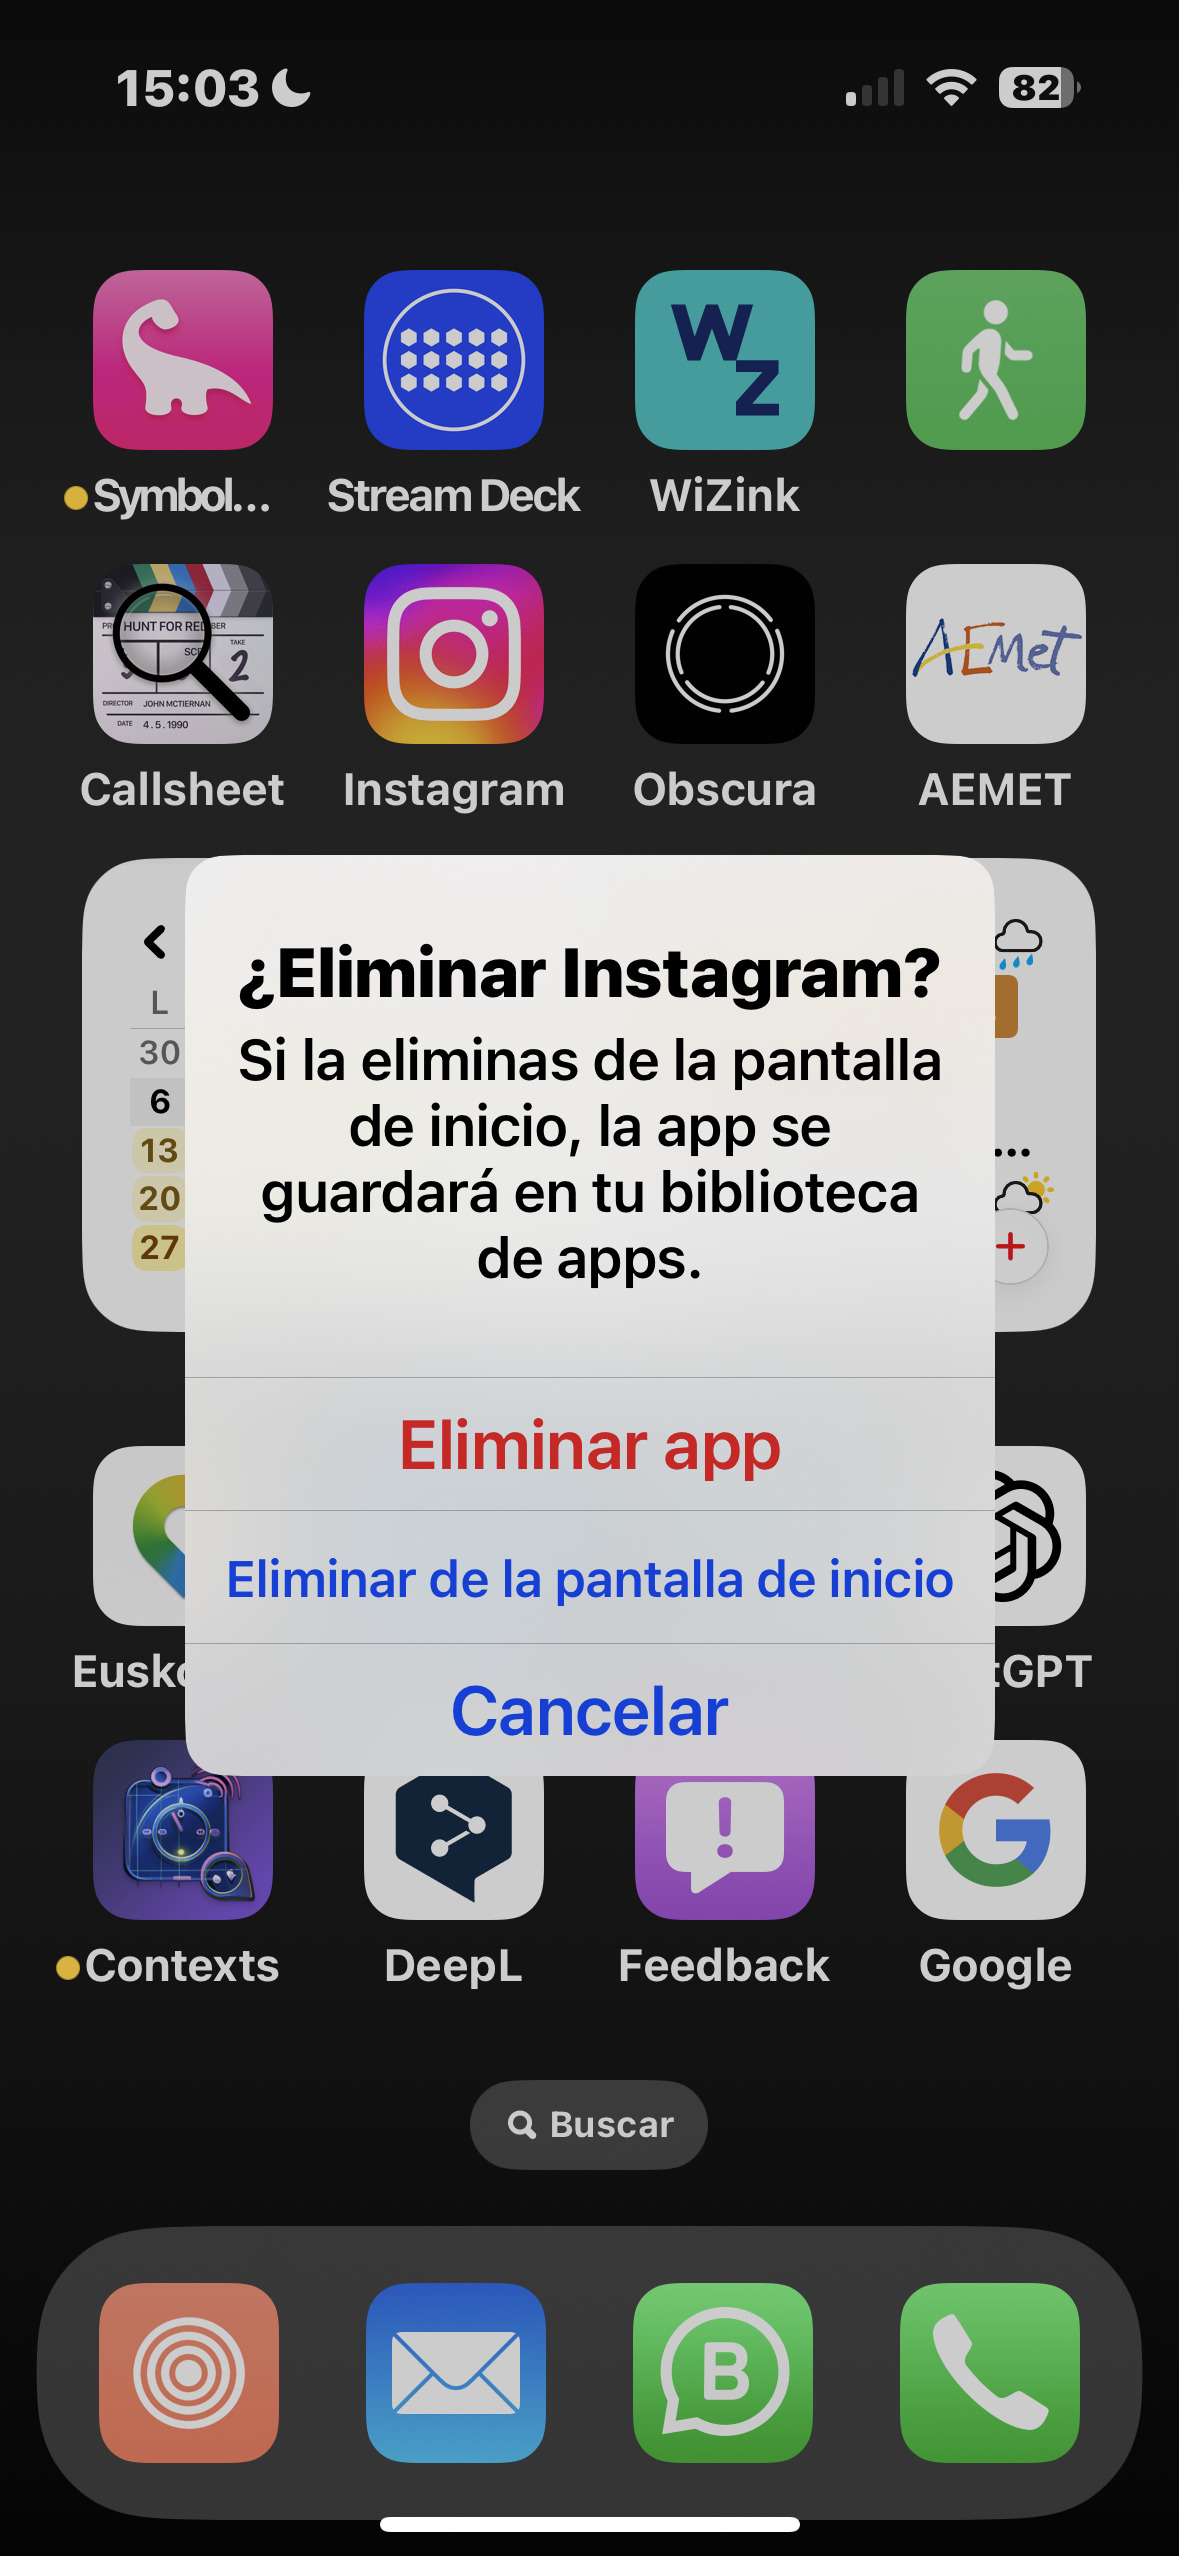 ¿Quieres eliminar la app o solo quitarla de la pantalla de inicio?